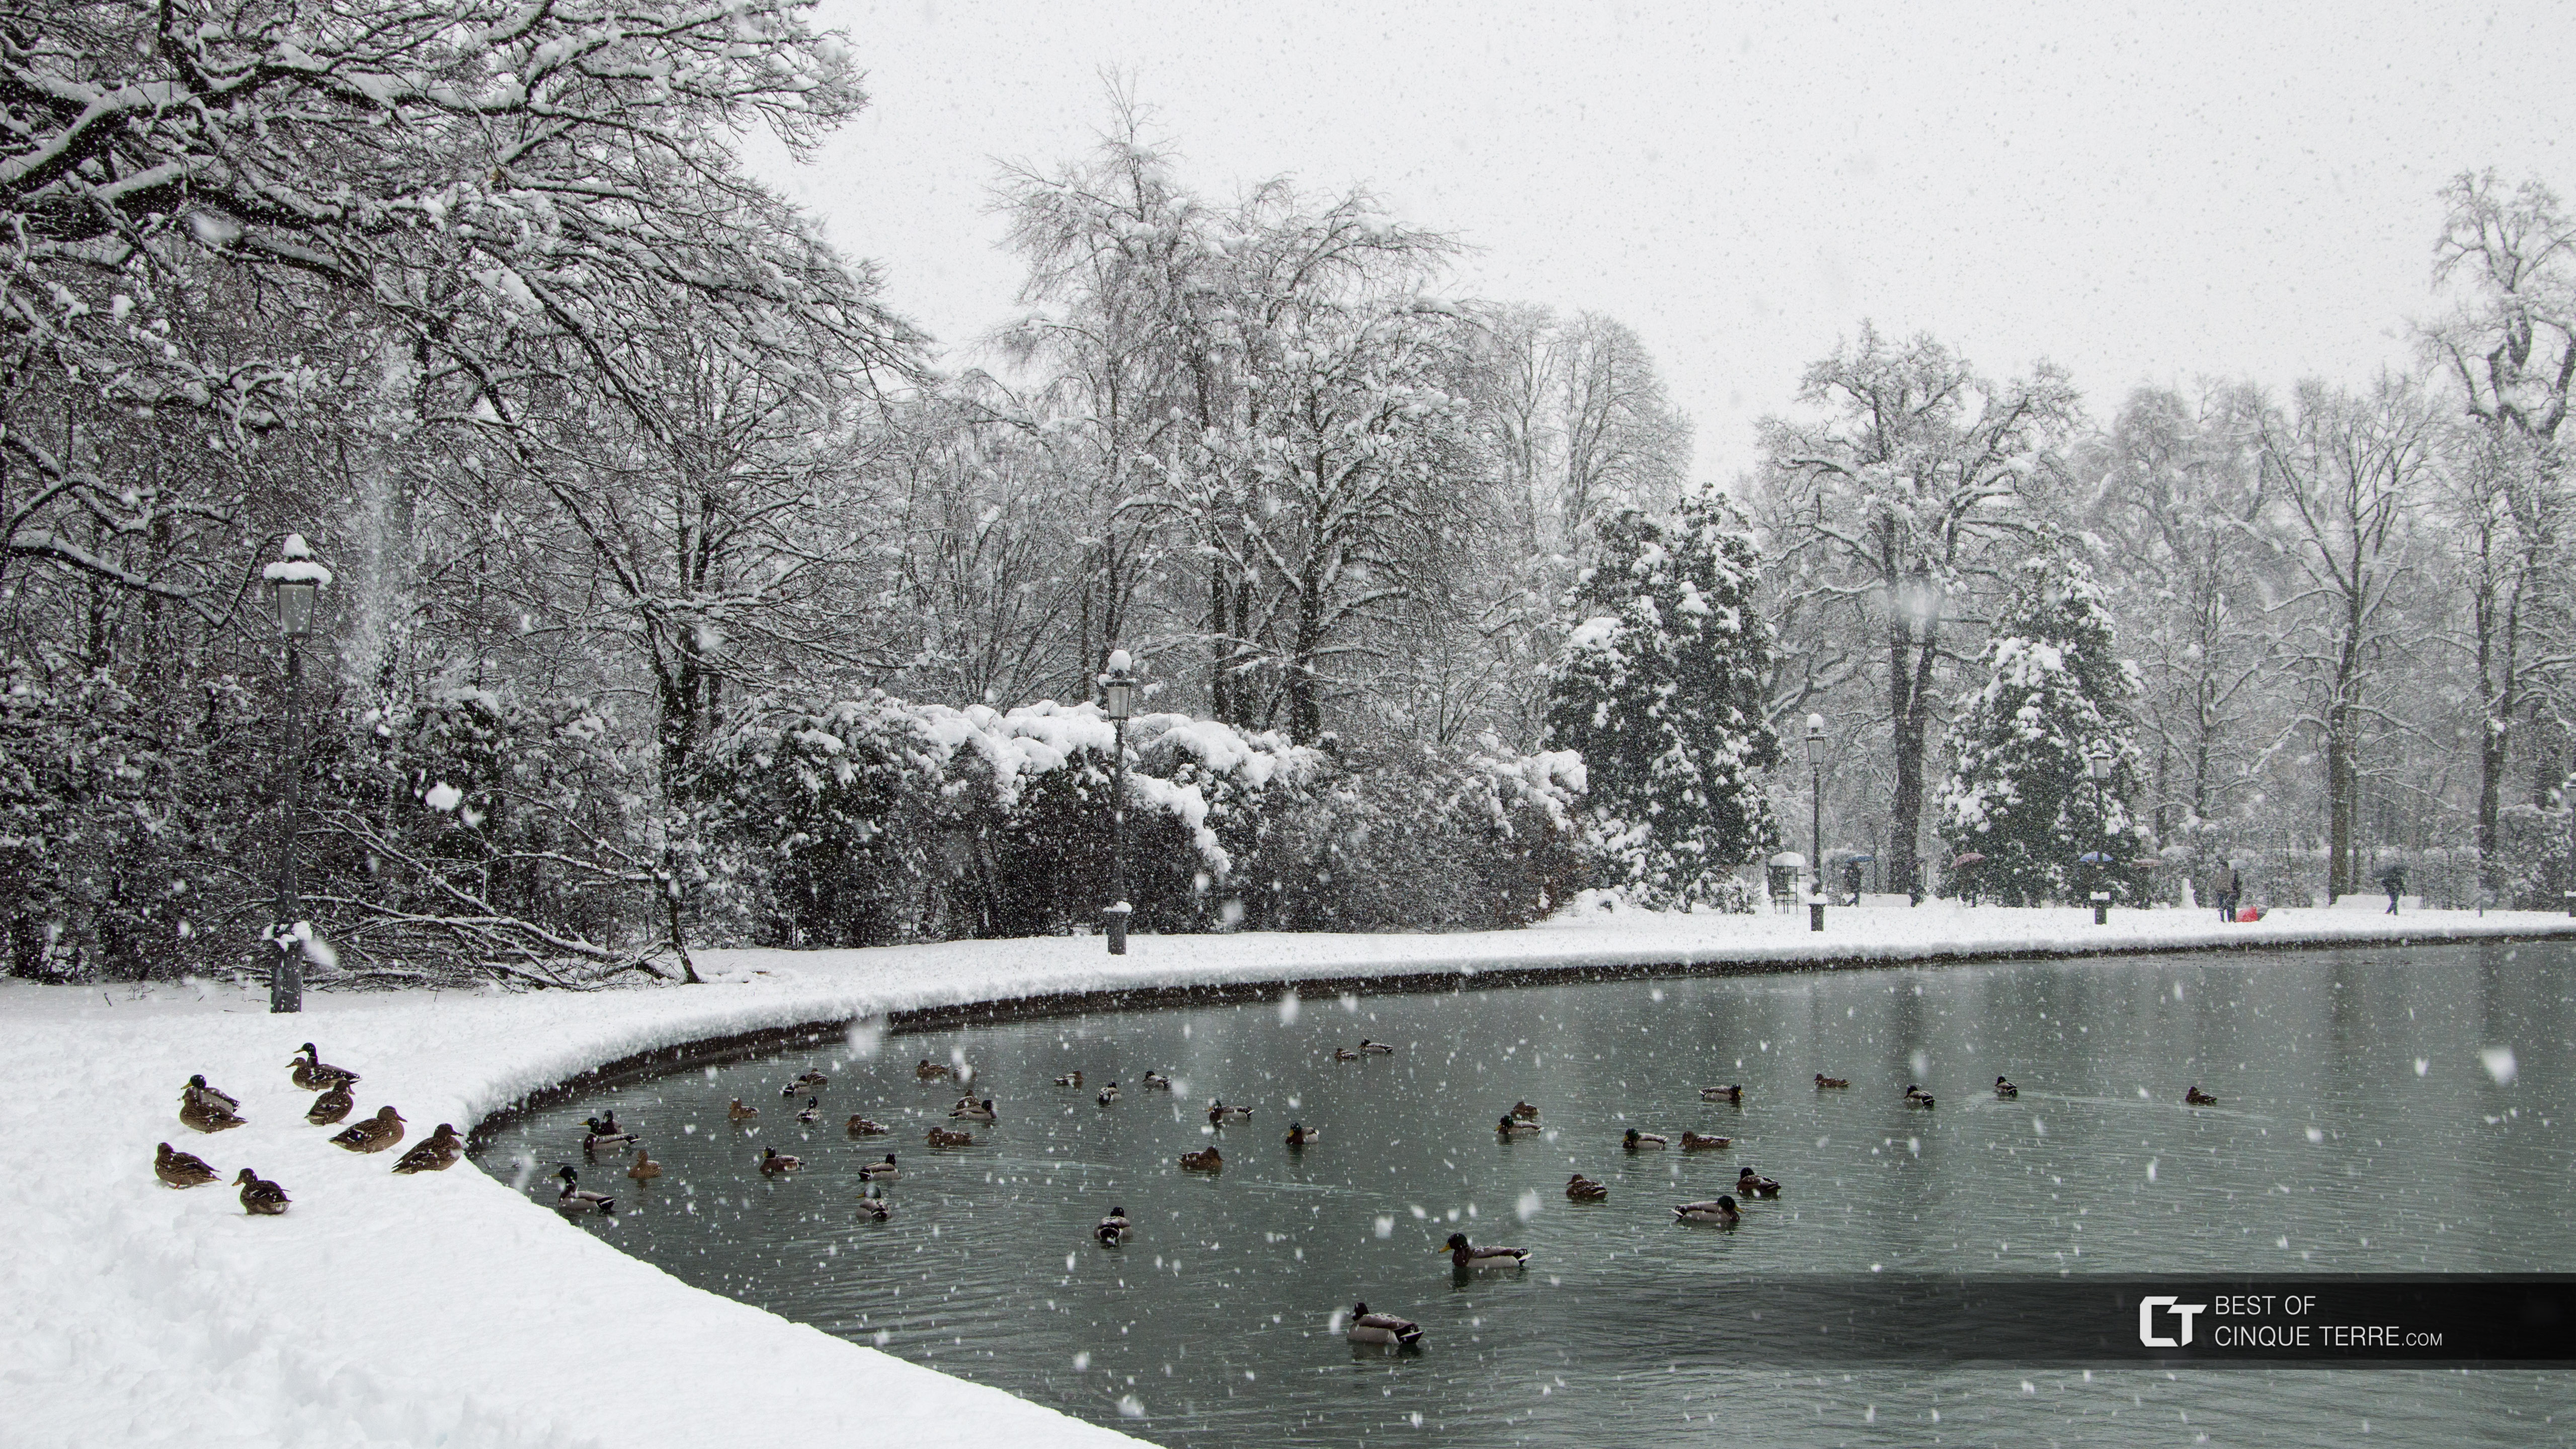 Lago en el parque Ducal en la nieve, un caso infrecuente, Parma, Italia